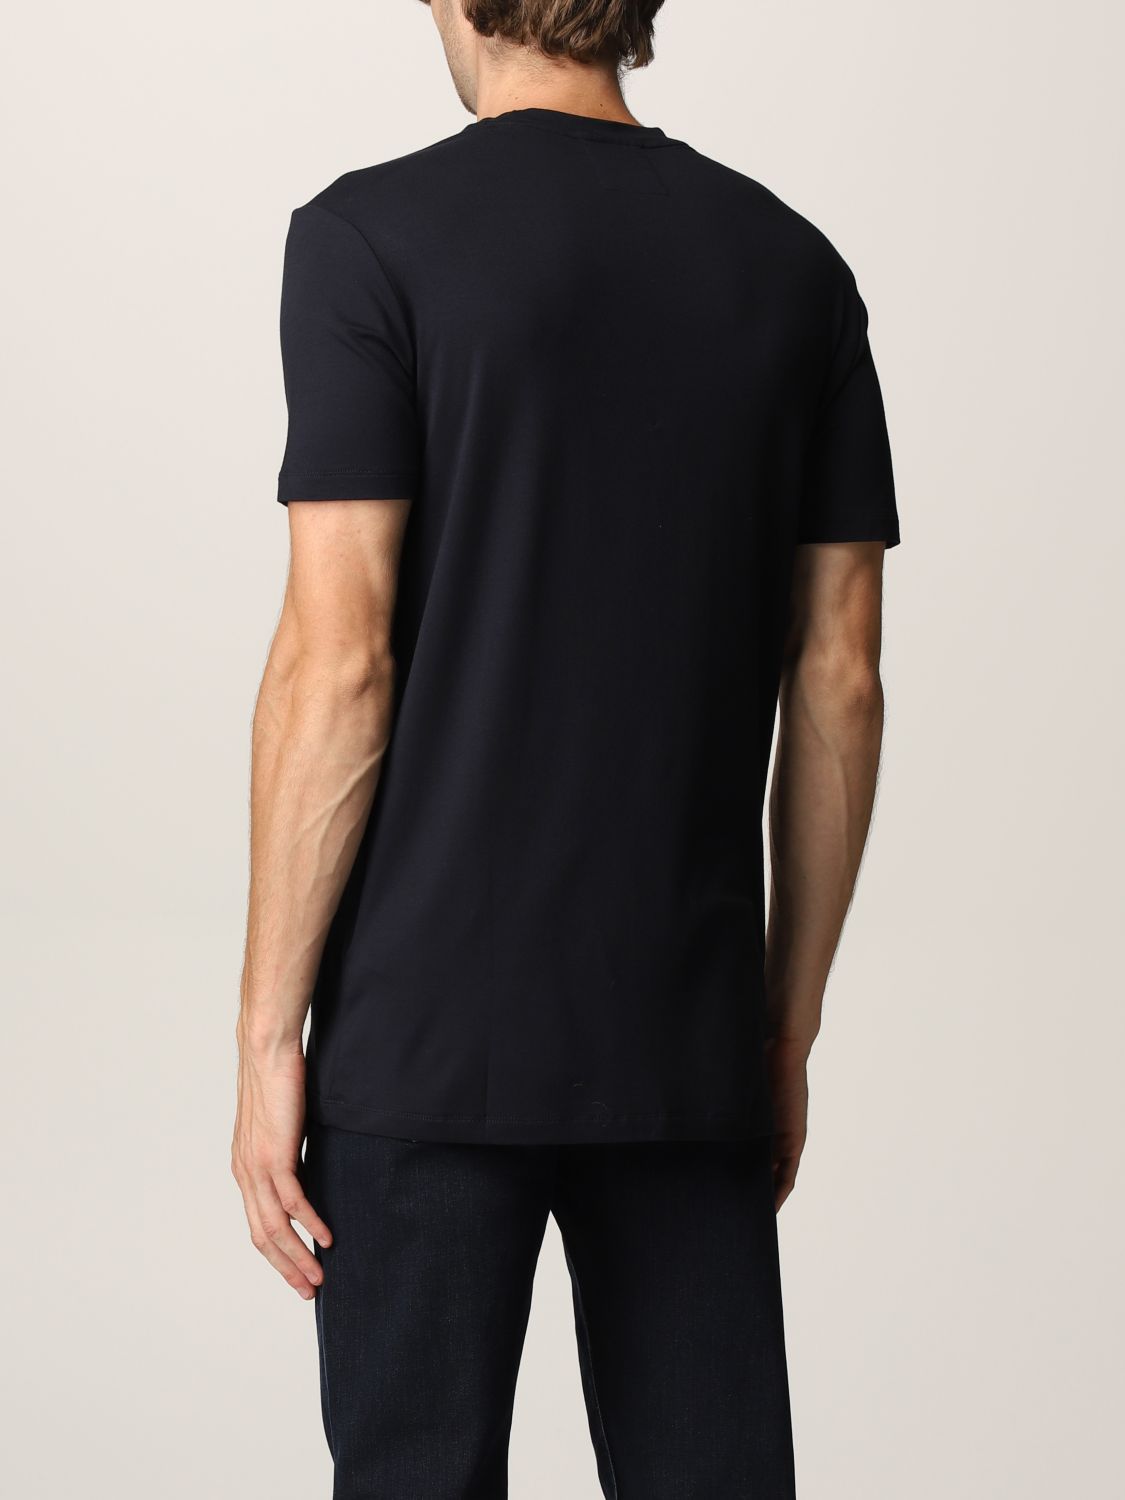 Camiseta Emporio Armani: Camiseta hombre Emporio Armani azul oscuro 2